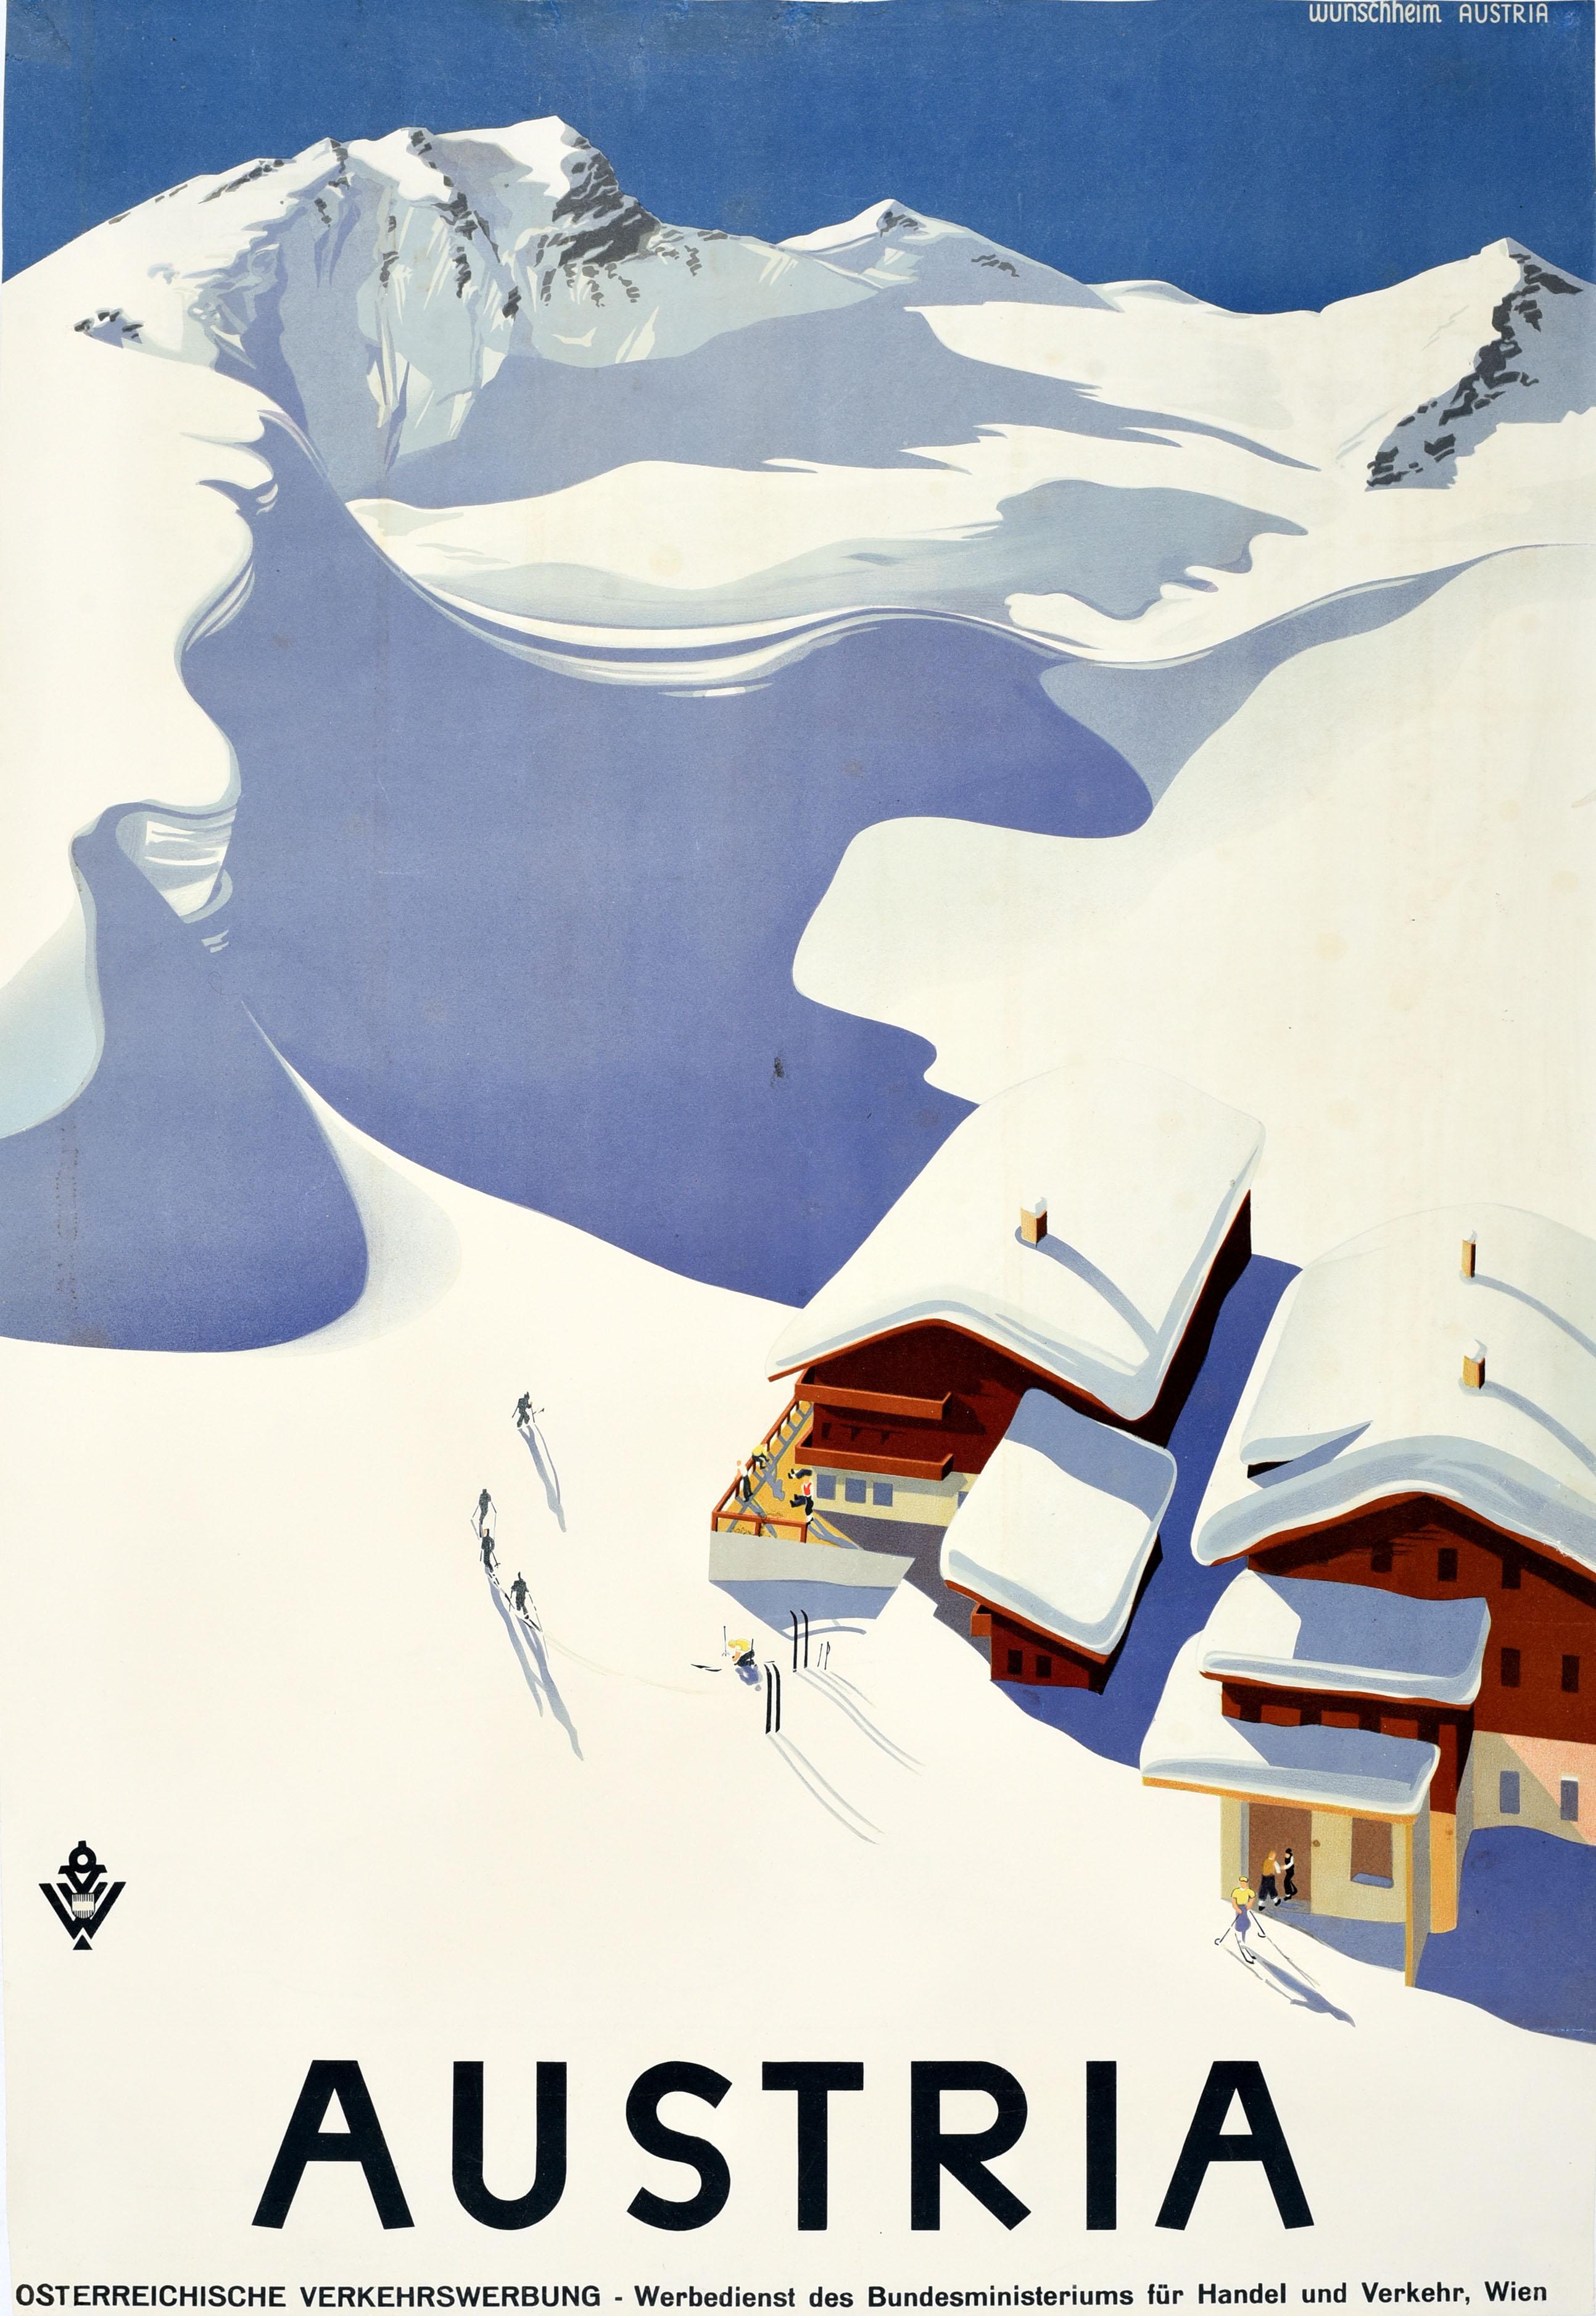 Erich von Wunschheim Print - Original Vintage Winter Sport Skiing Travel Poster Austria Ski Chalet Wunschheim